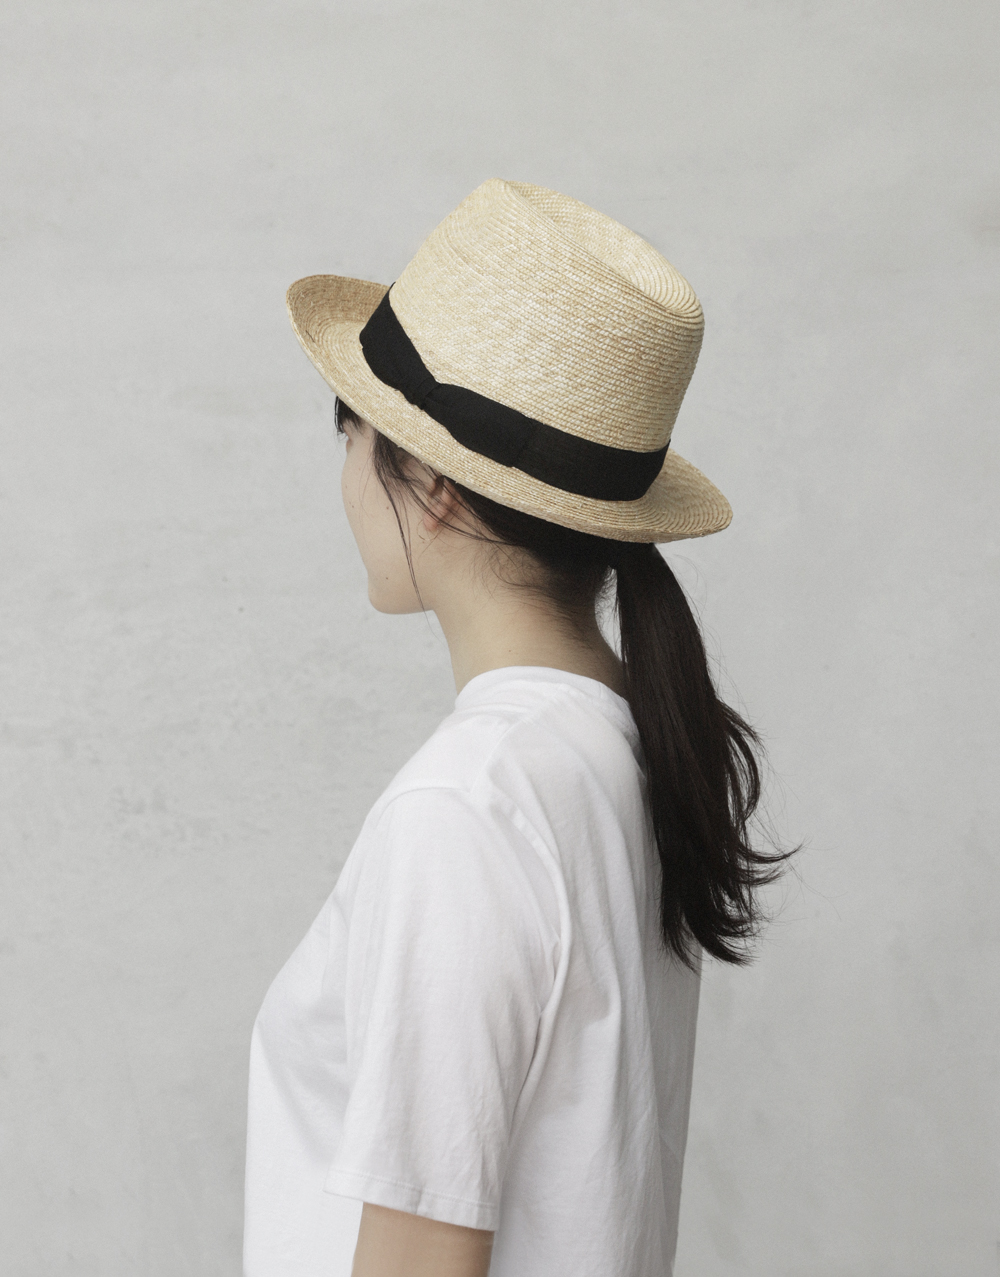 日差しを味方に、愛され続ける麦わら帽子『FUJII SEIBO』 - MOMO NATURAL